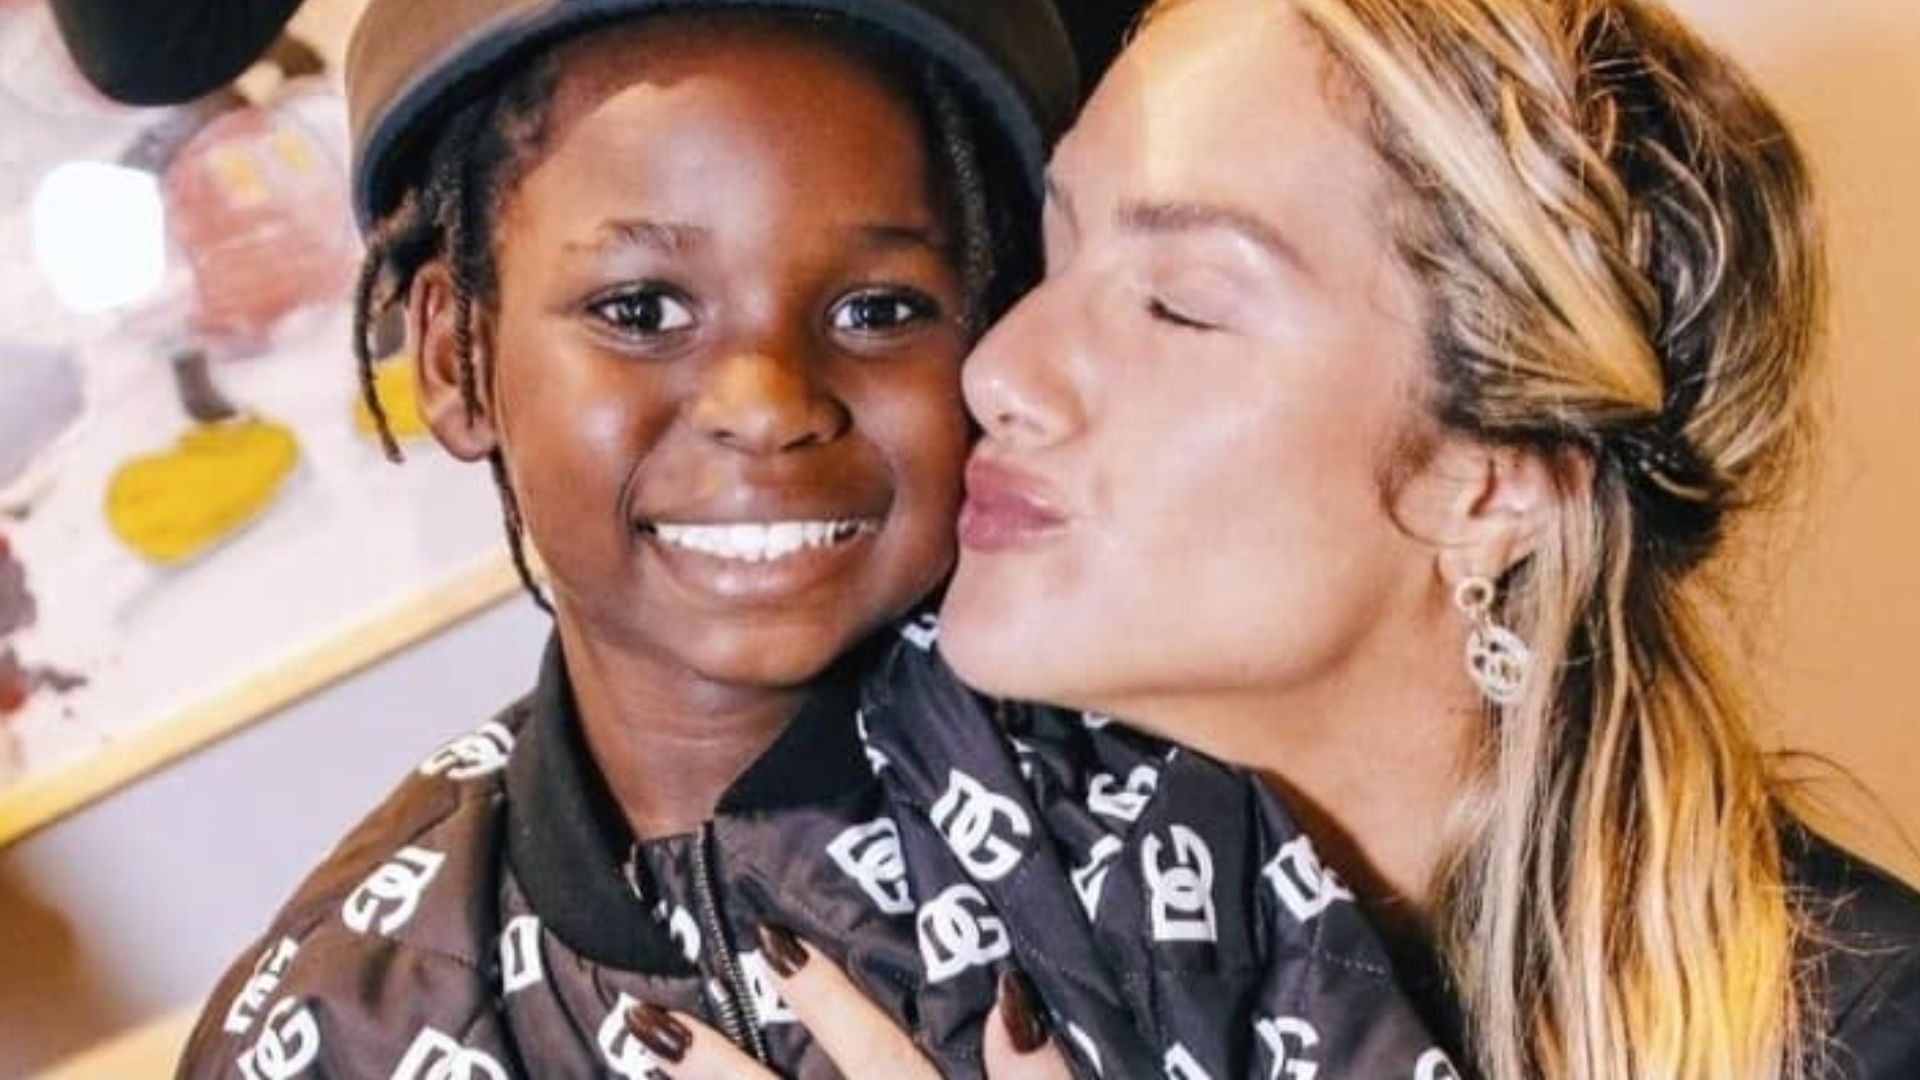 Giovanna Ewbank se emociona com estreia de Bless como modelo: “Importante e potente” - Metropolitana FM